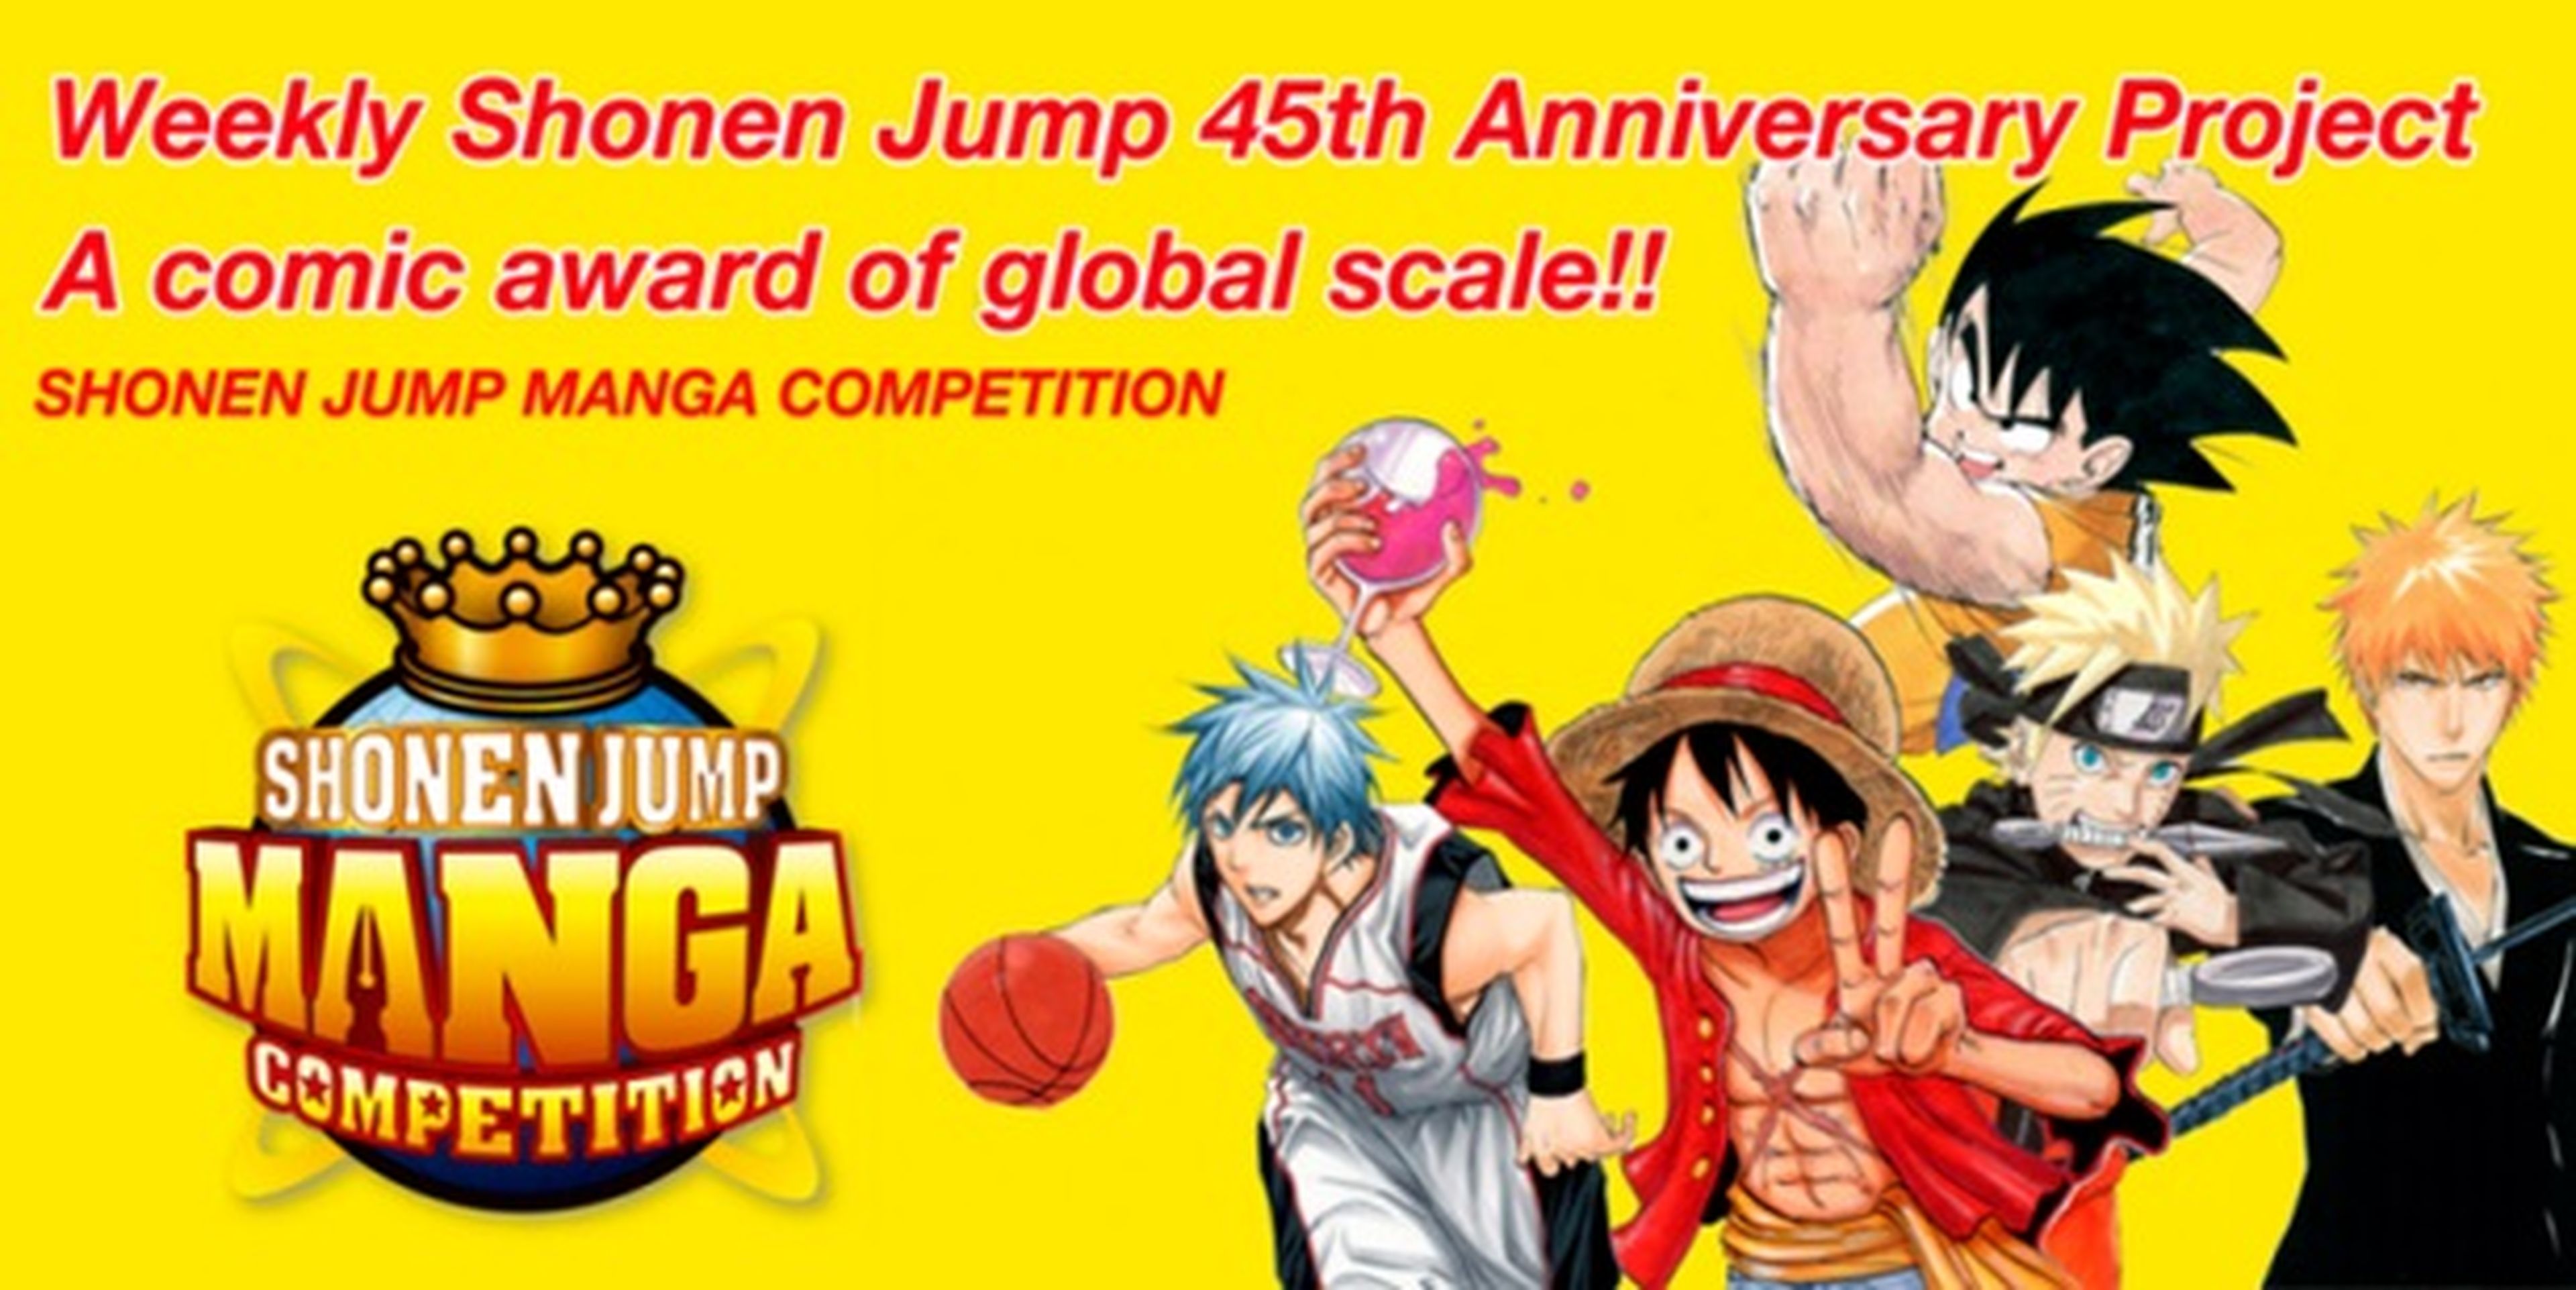 Concurso de manga de la Shonen Jump